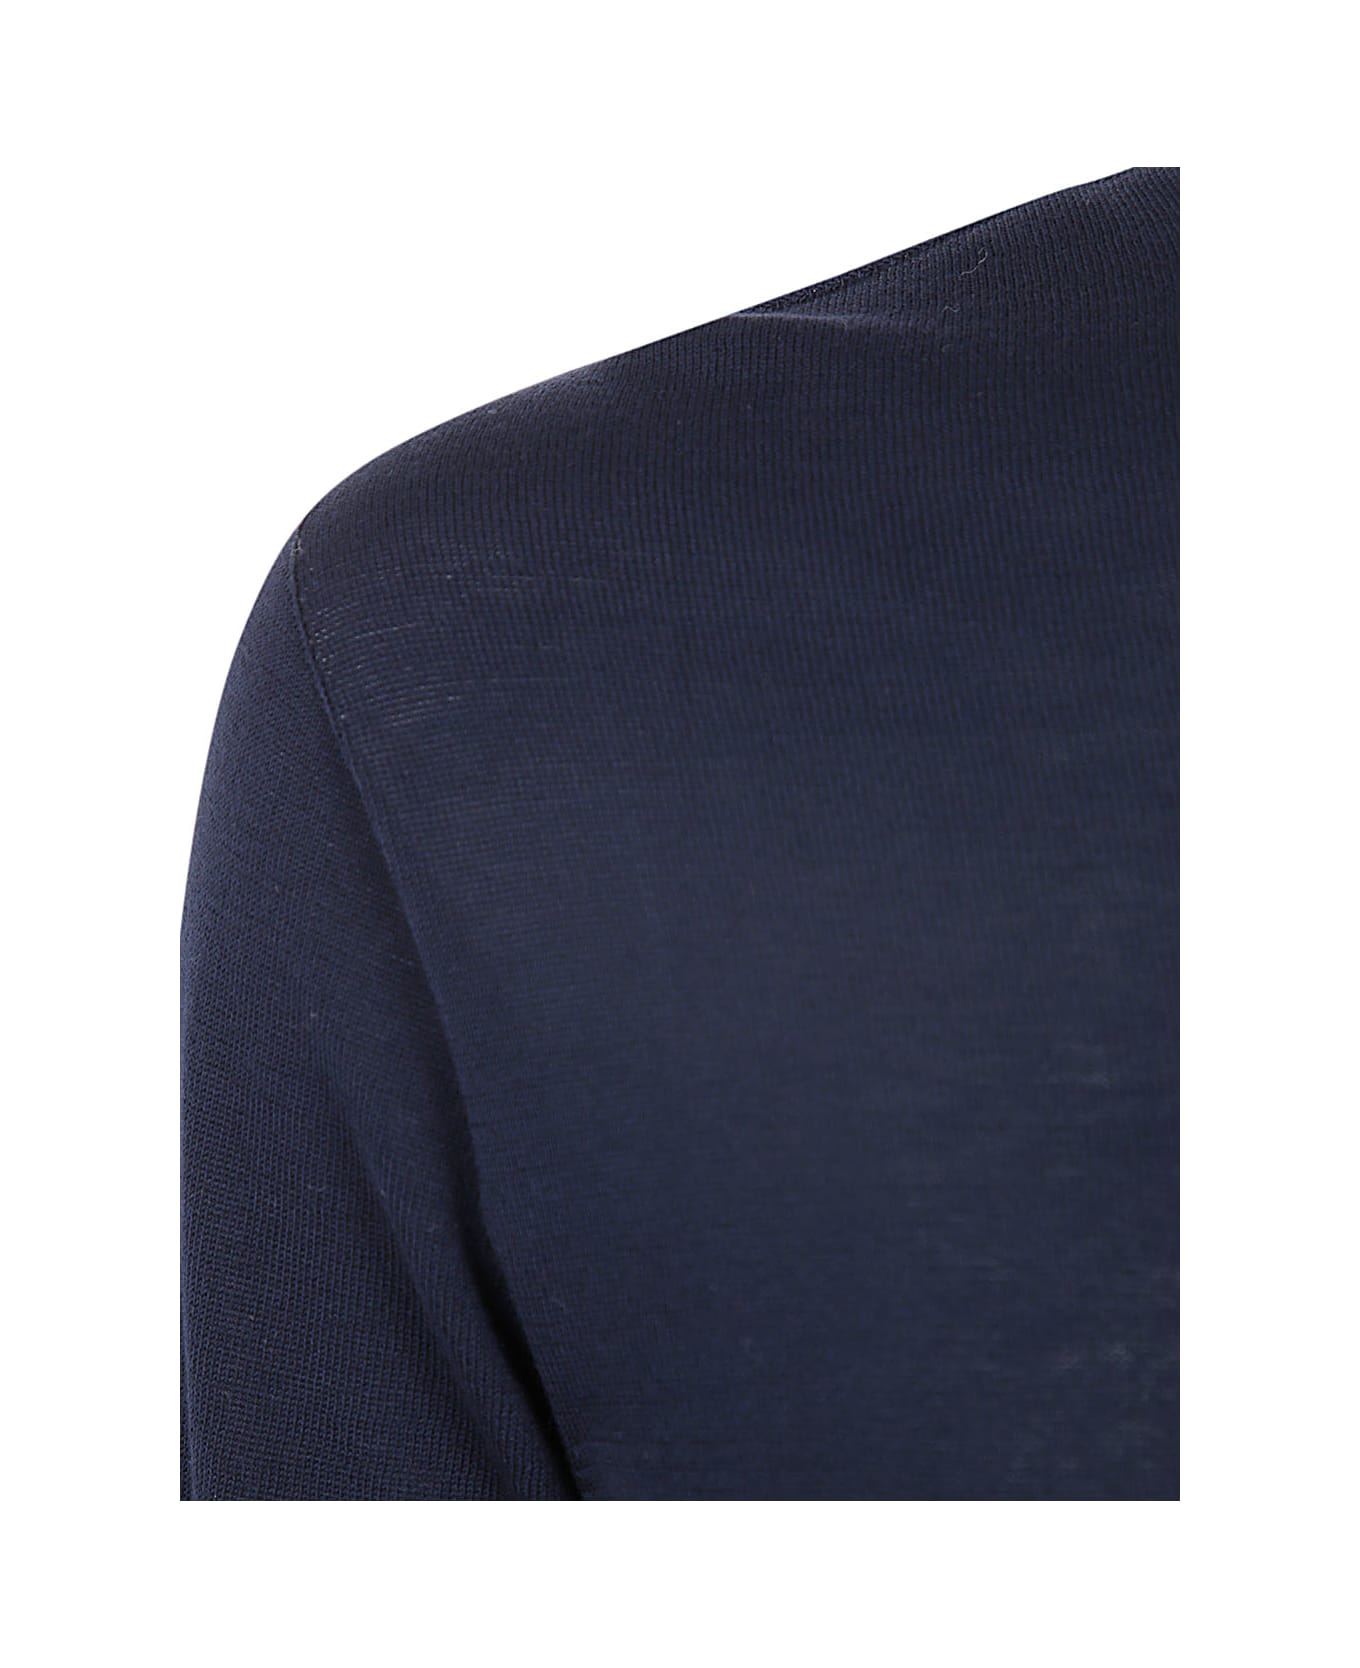 MD75 Classic Round Neck Pullover - Basic Blue ニットウェア